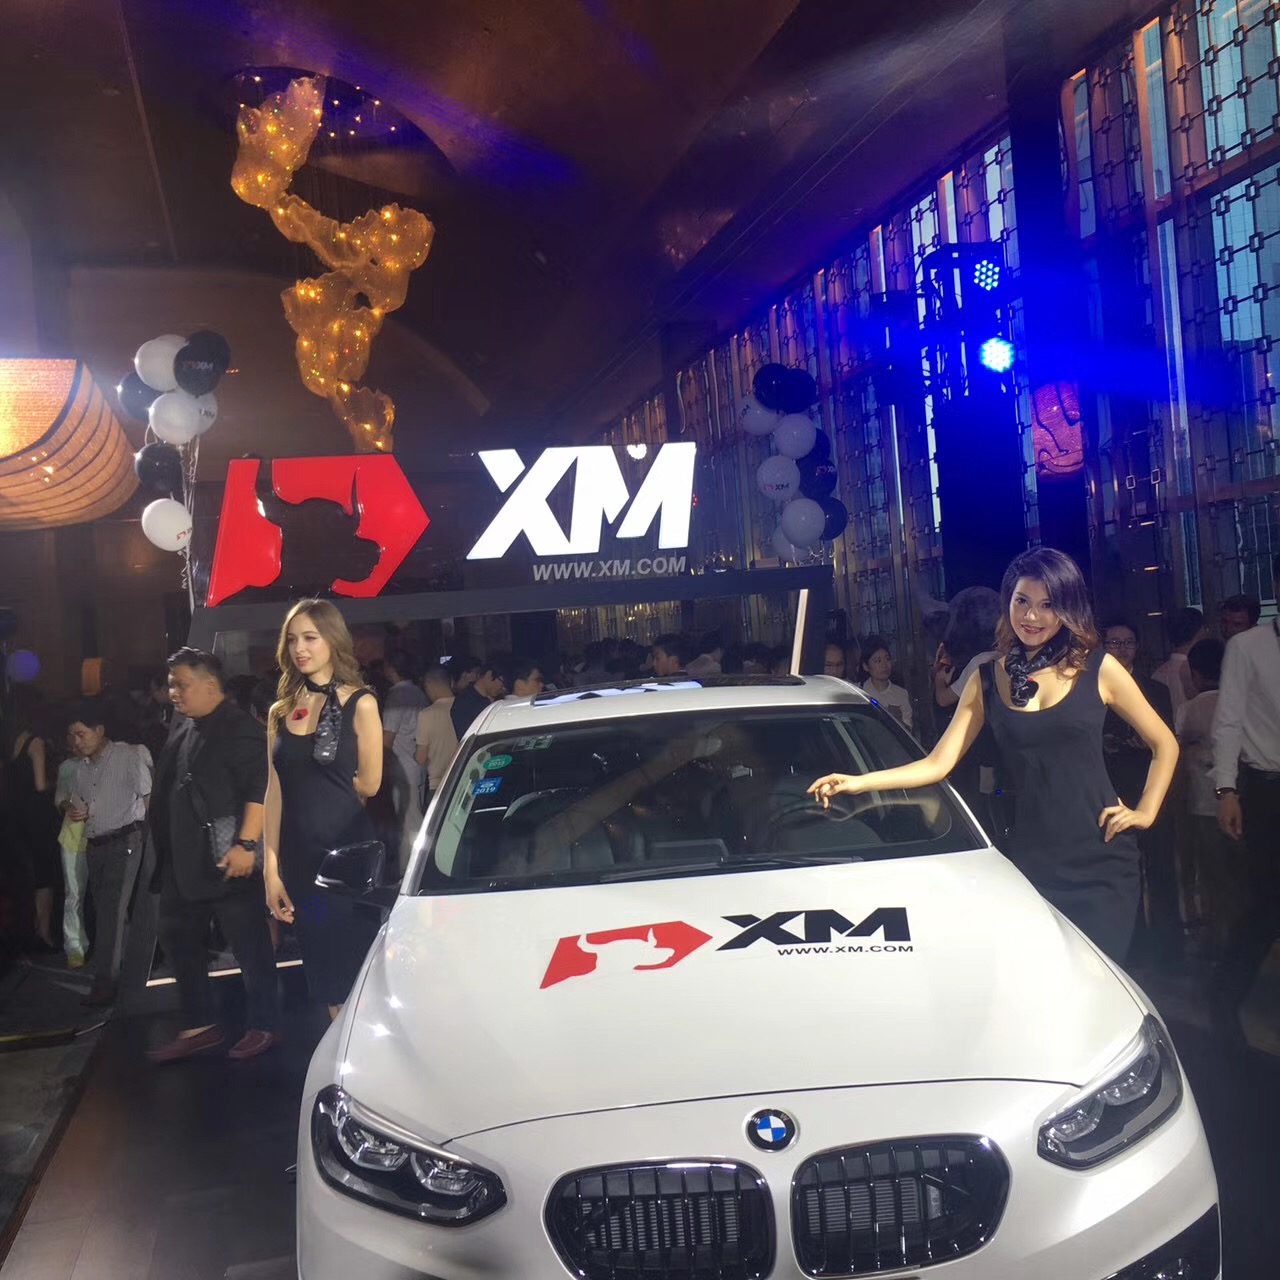 再造行业盛典 - 2017XM六周年Gala晚宴圆满落幕3